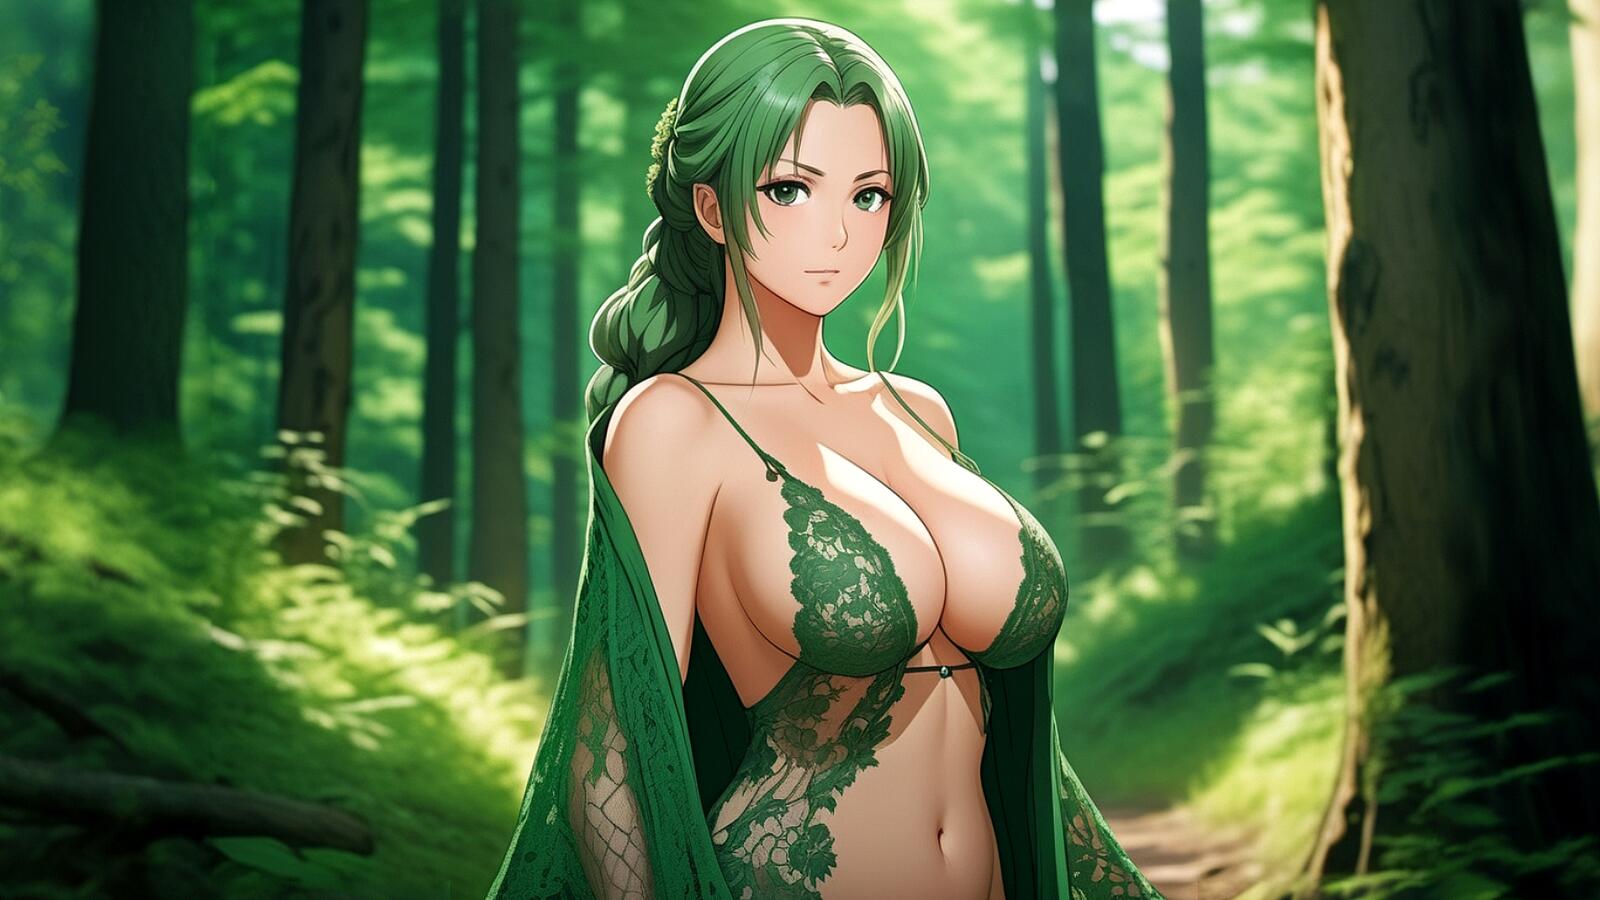 Бесплатное фото Девушка в зеленом нижнем белье в лесу